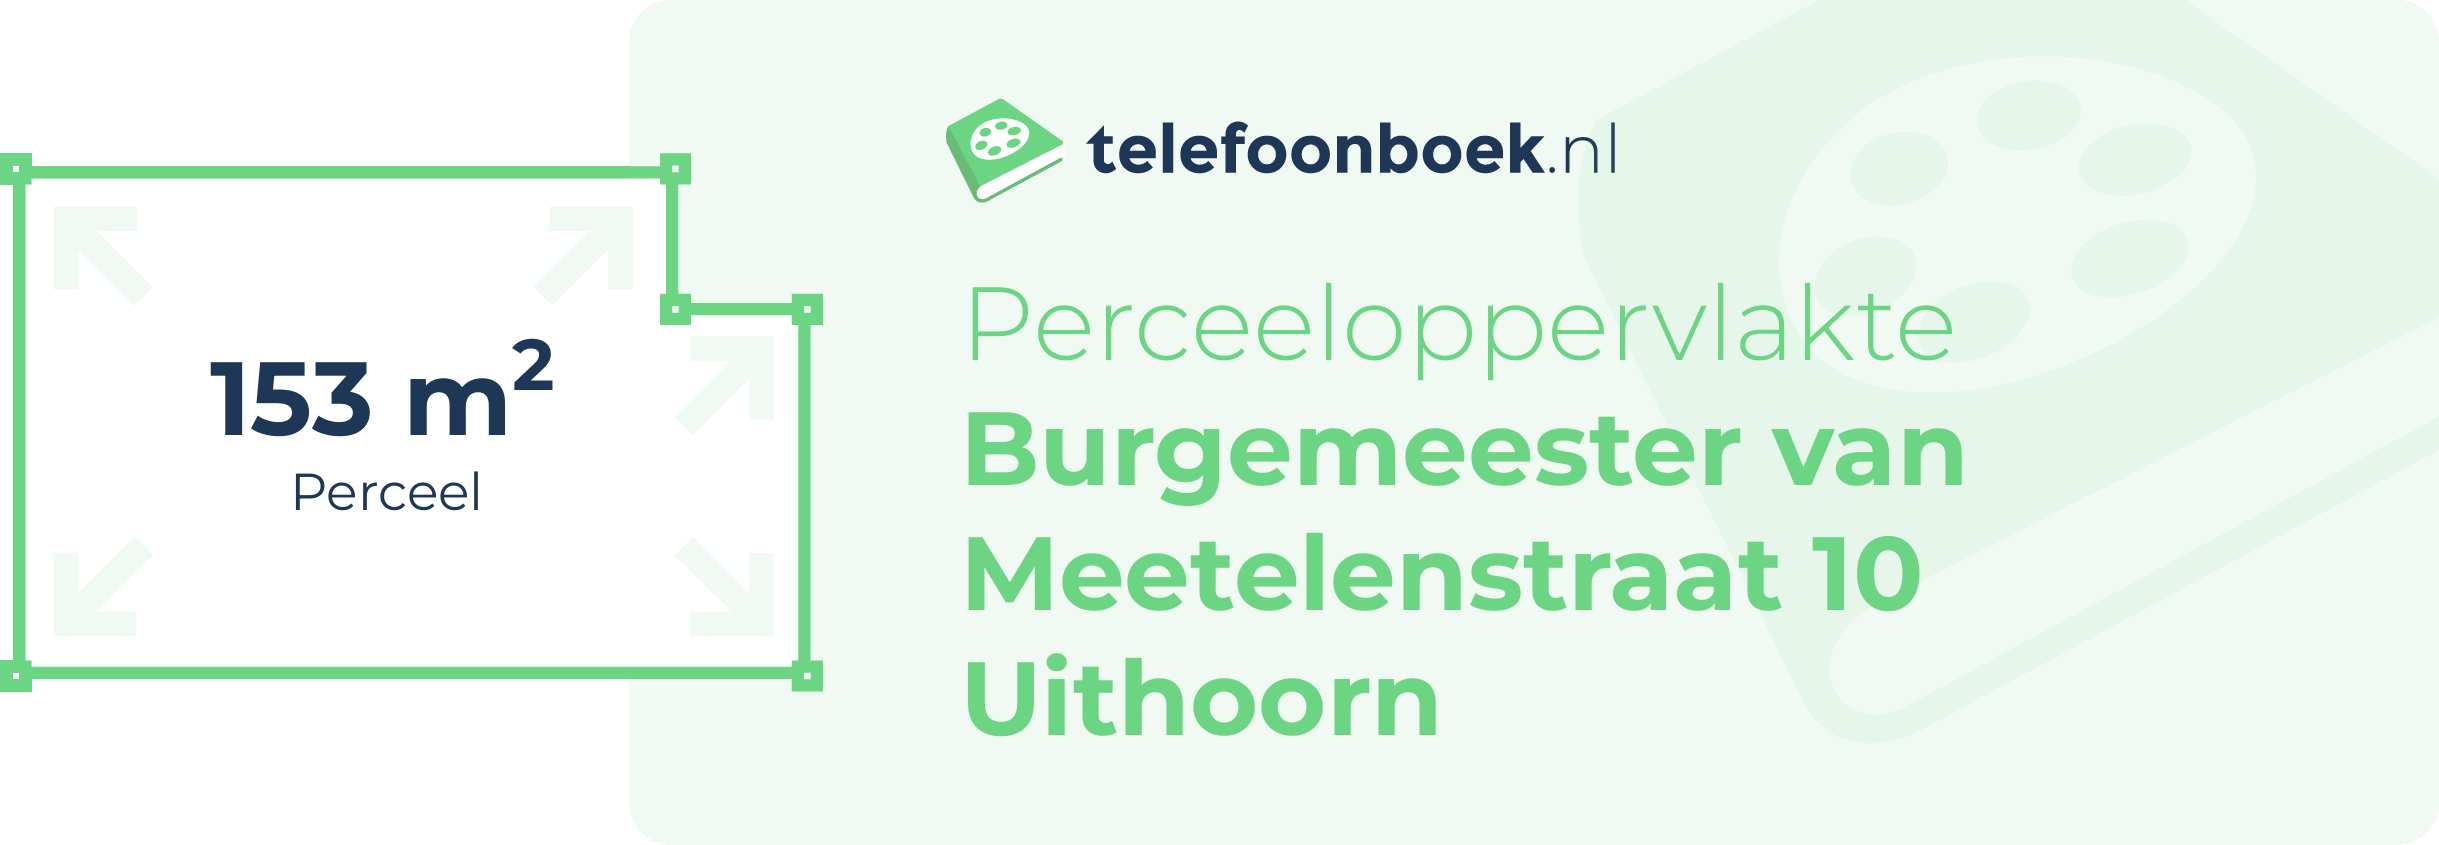 Perceeloppervlakte Burgemeester Van Meetelenstraat 10 Uithoorn